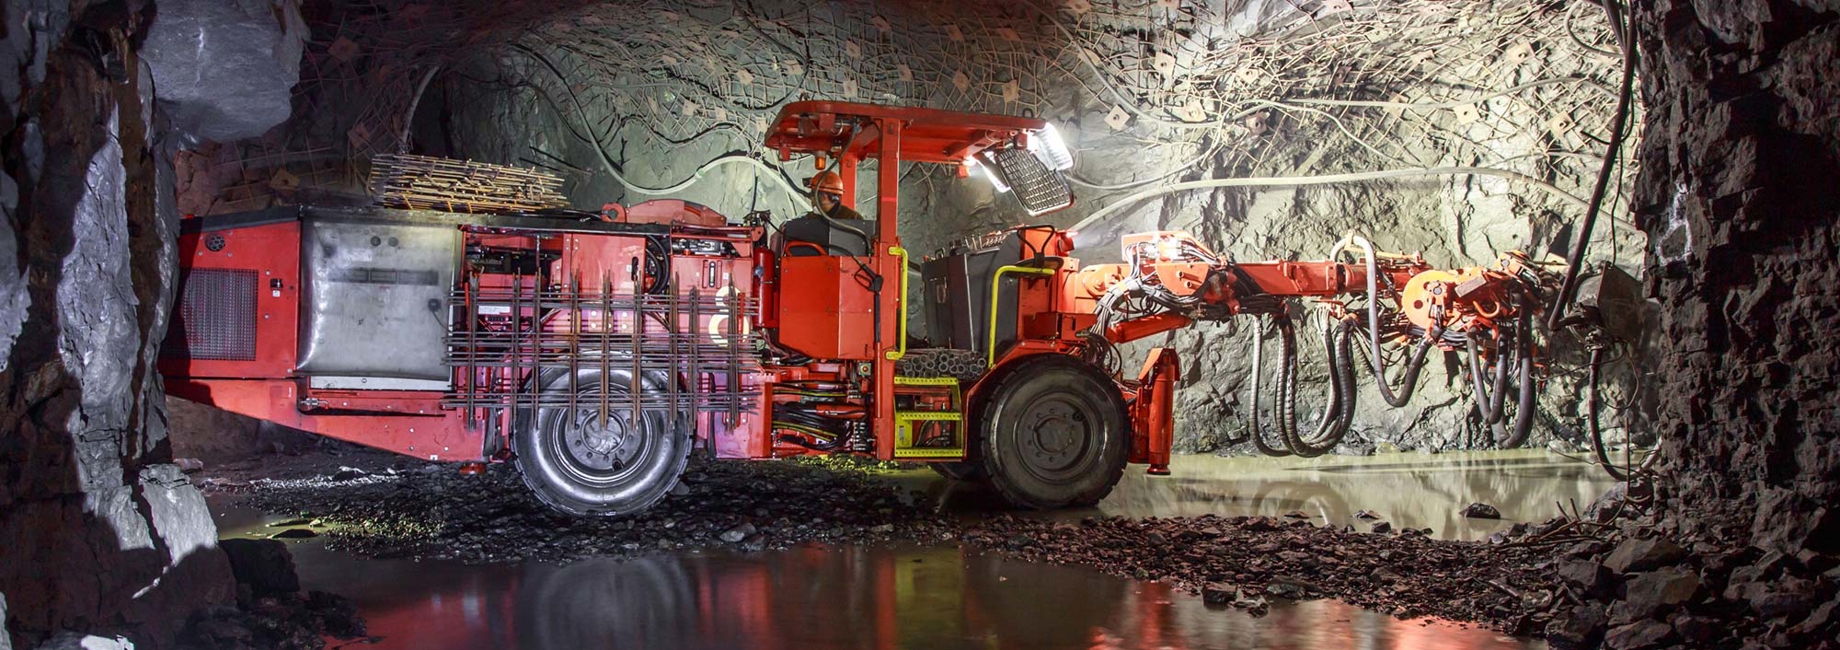 Iron ore machine in a mine underground